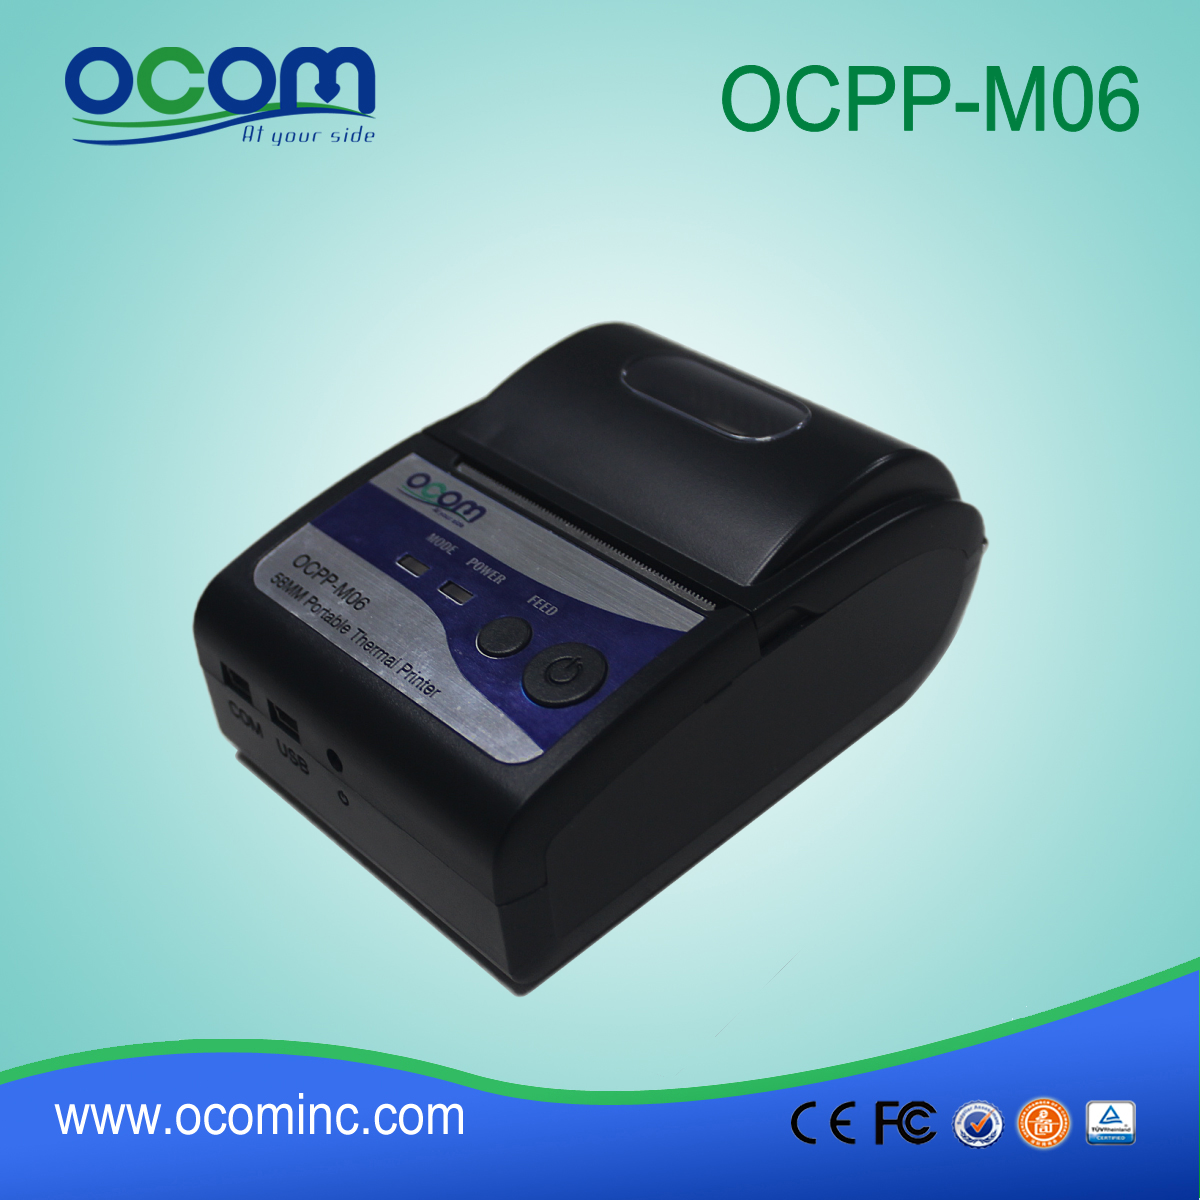 OCPP-M06: OCOM Heiße verkaufende preiswerte 58mm Bluetooth-Drucker, Bluetooth-Drucker 58mm